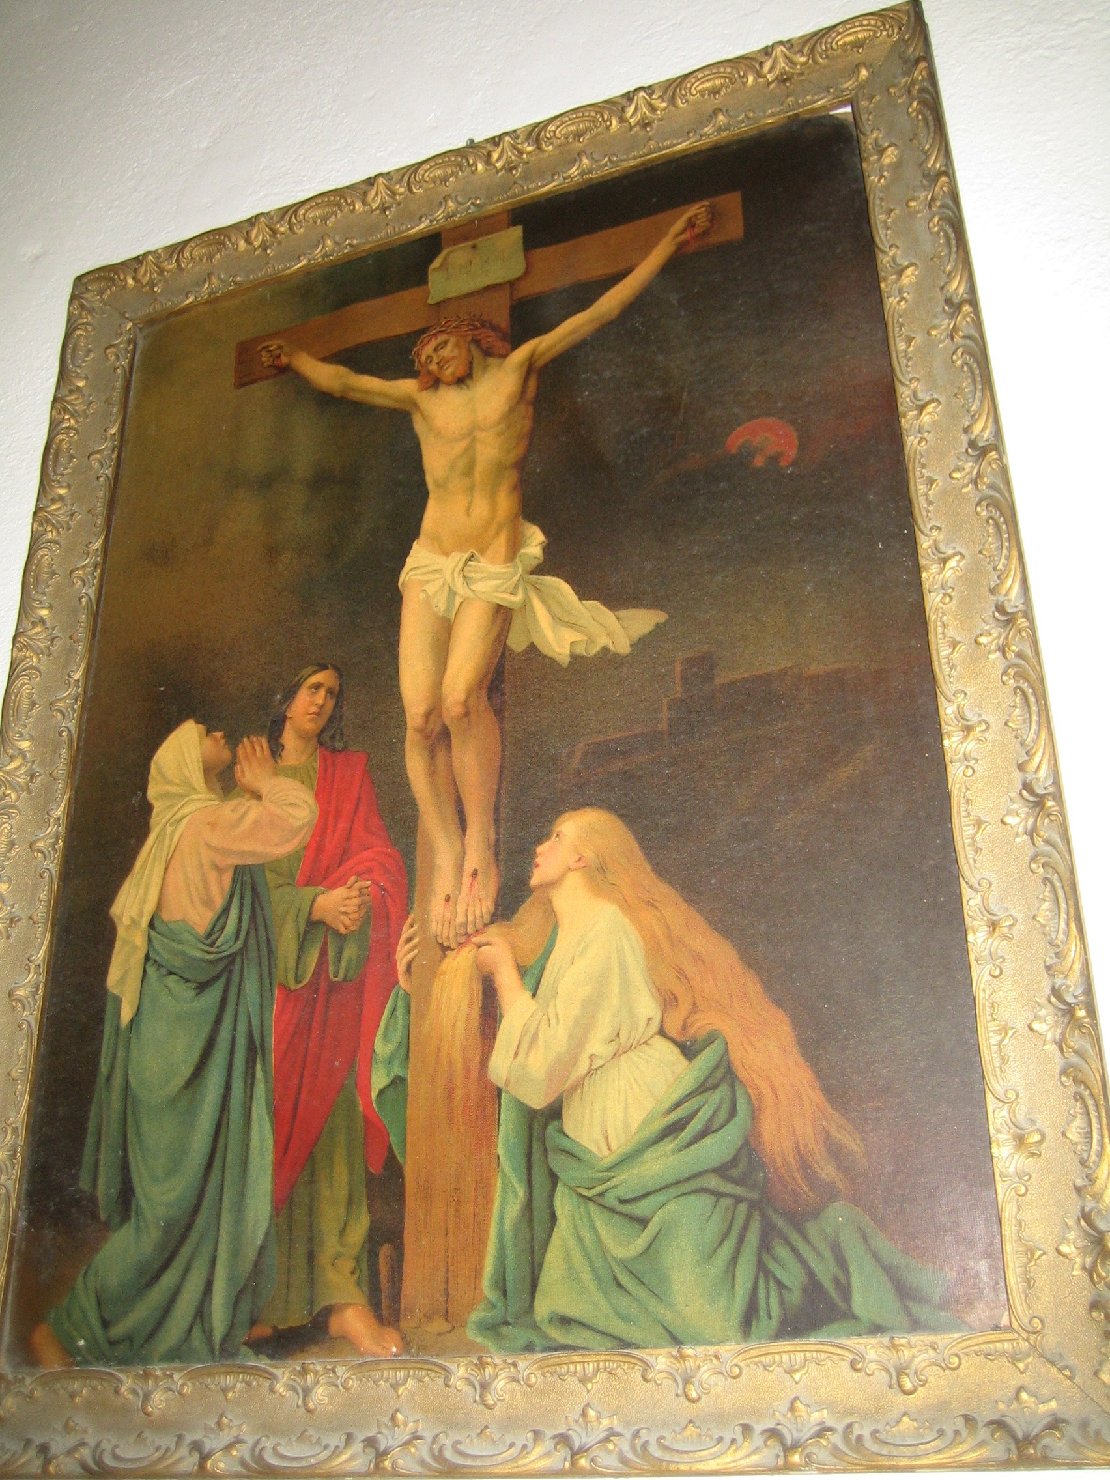 Cristo crocifisso con la madonna, santa maria maddalena e san giovanni evangelista (stampa a colori)